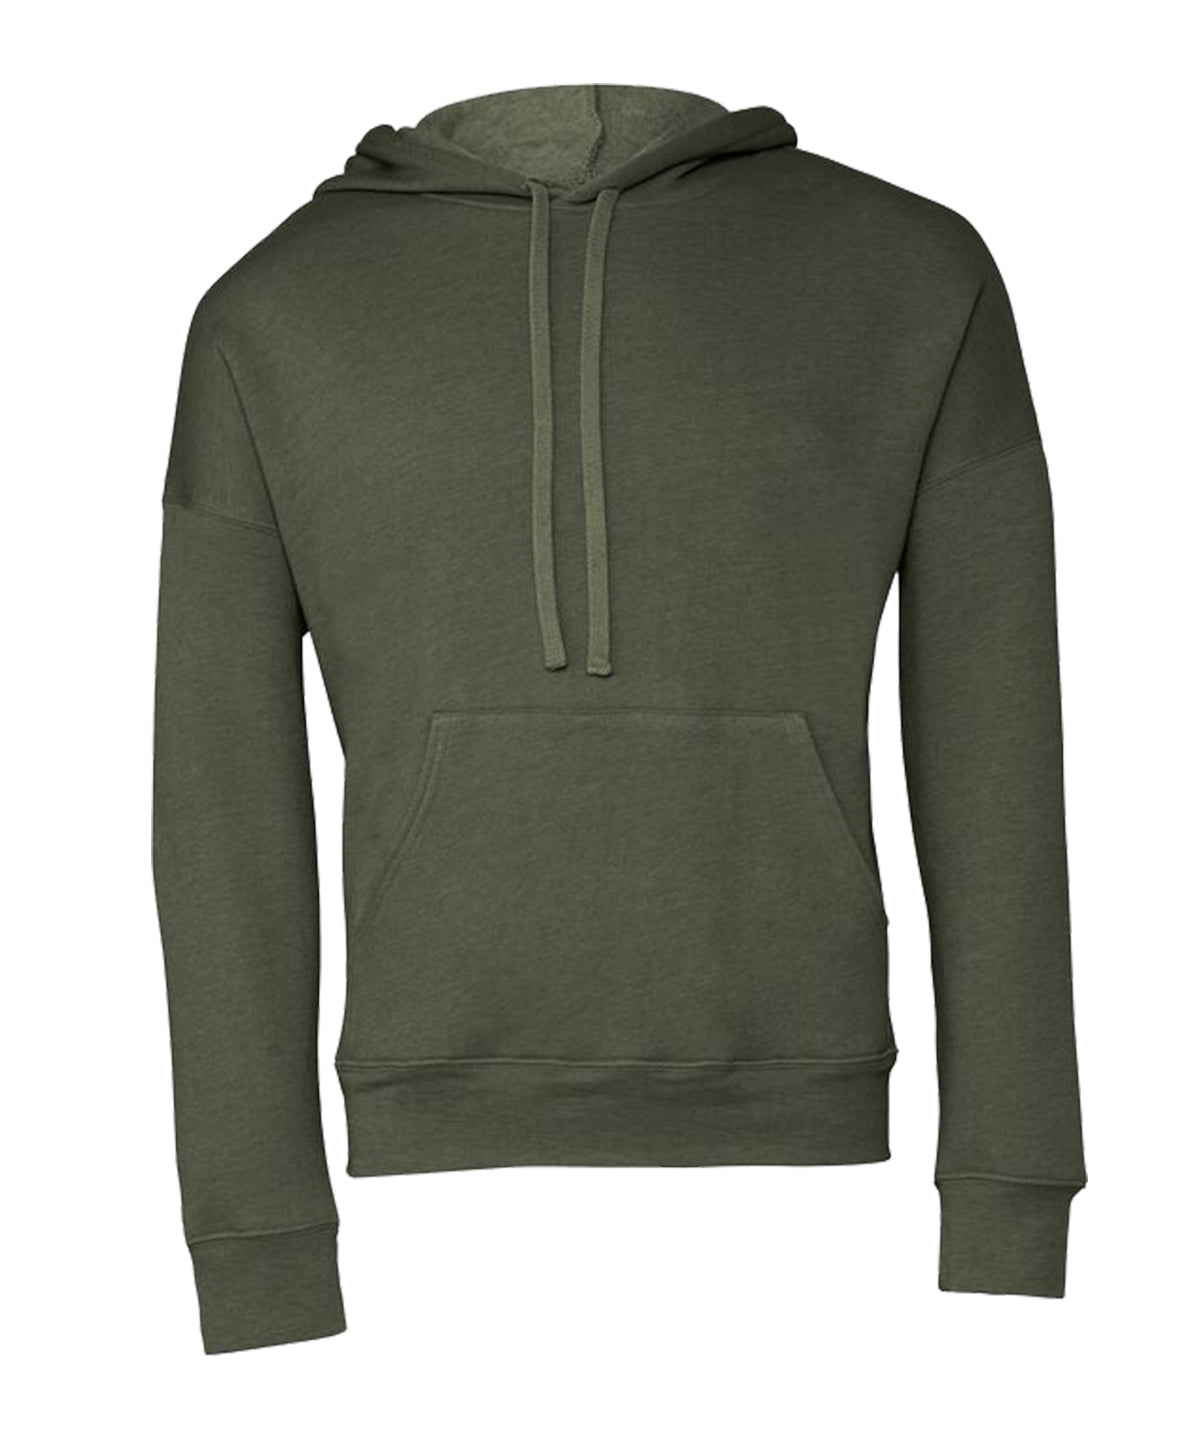 Personalised Hoodies - Black Bella Canvas Unisex sponge fleece pullover DTM hoodie